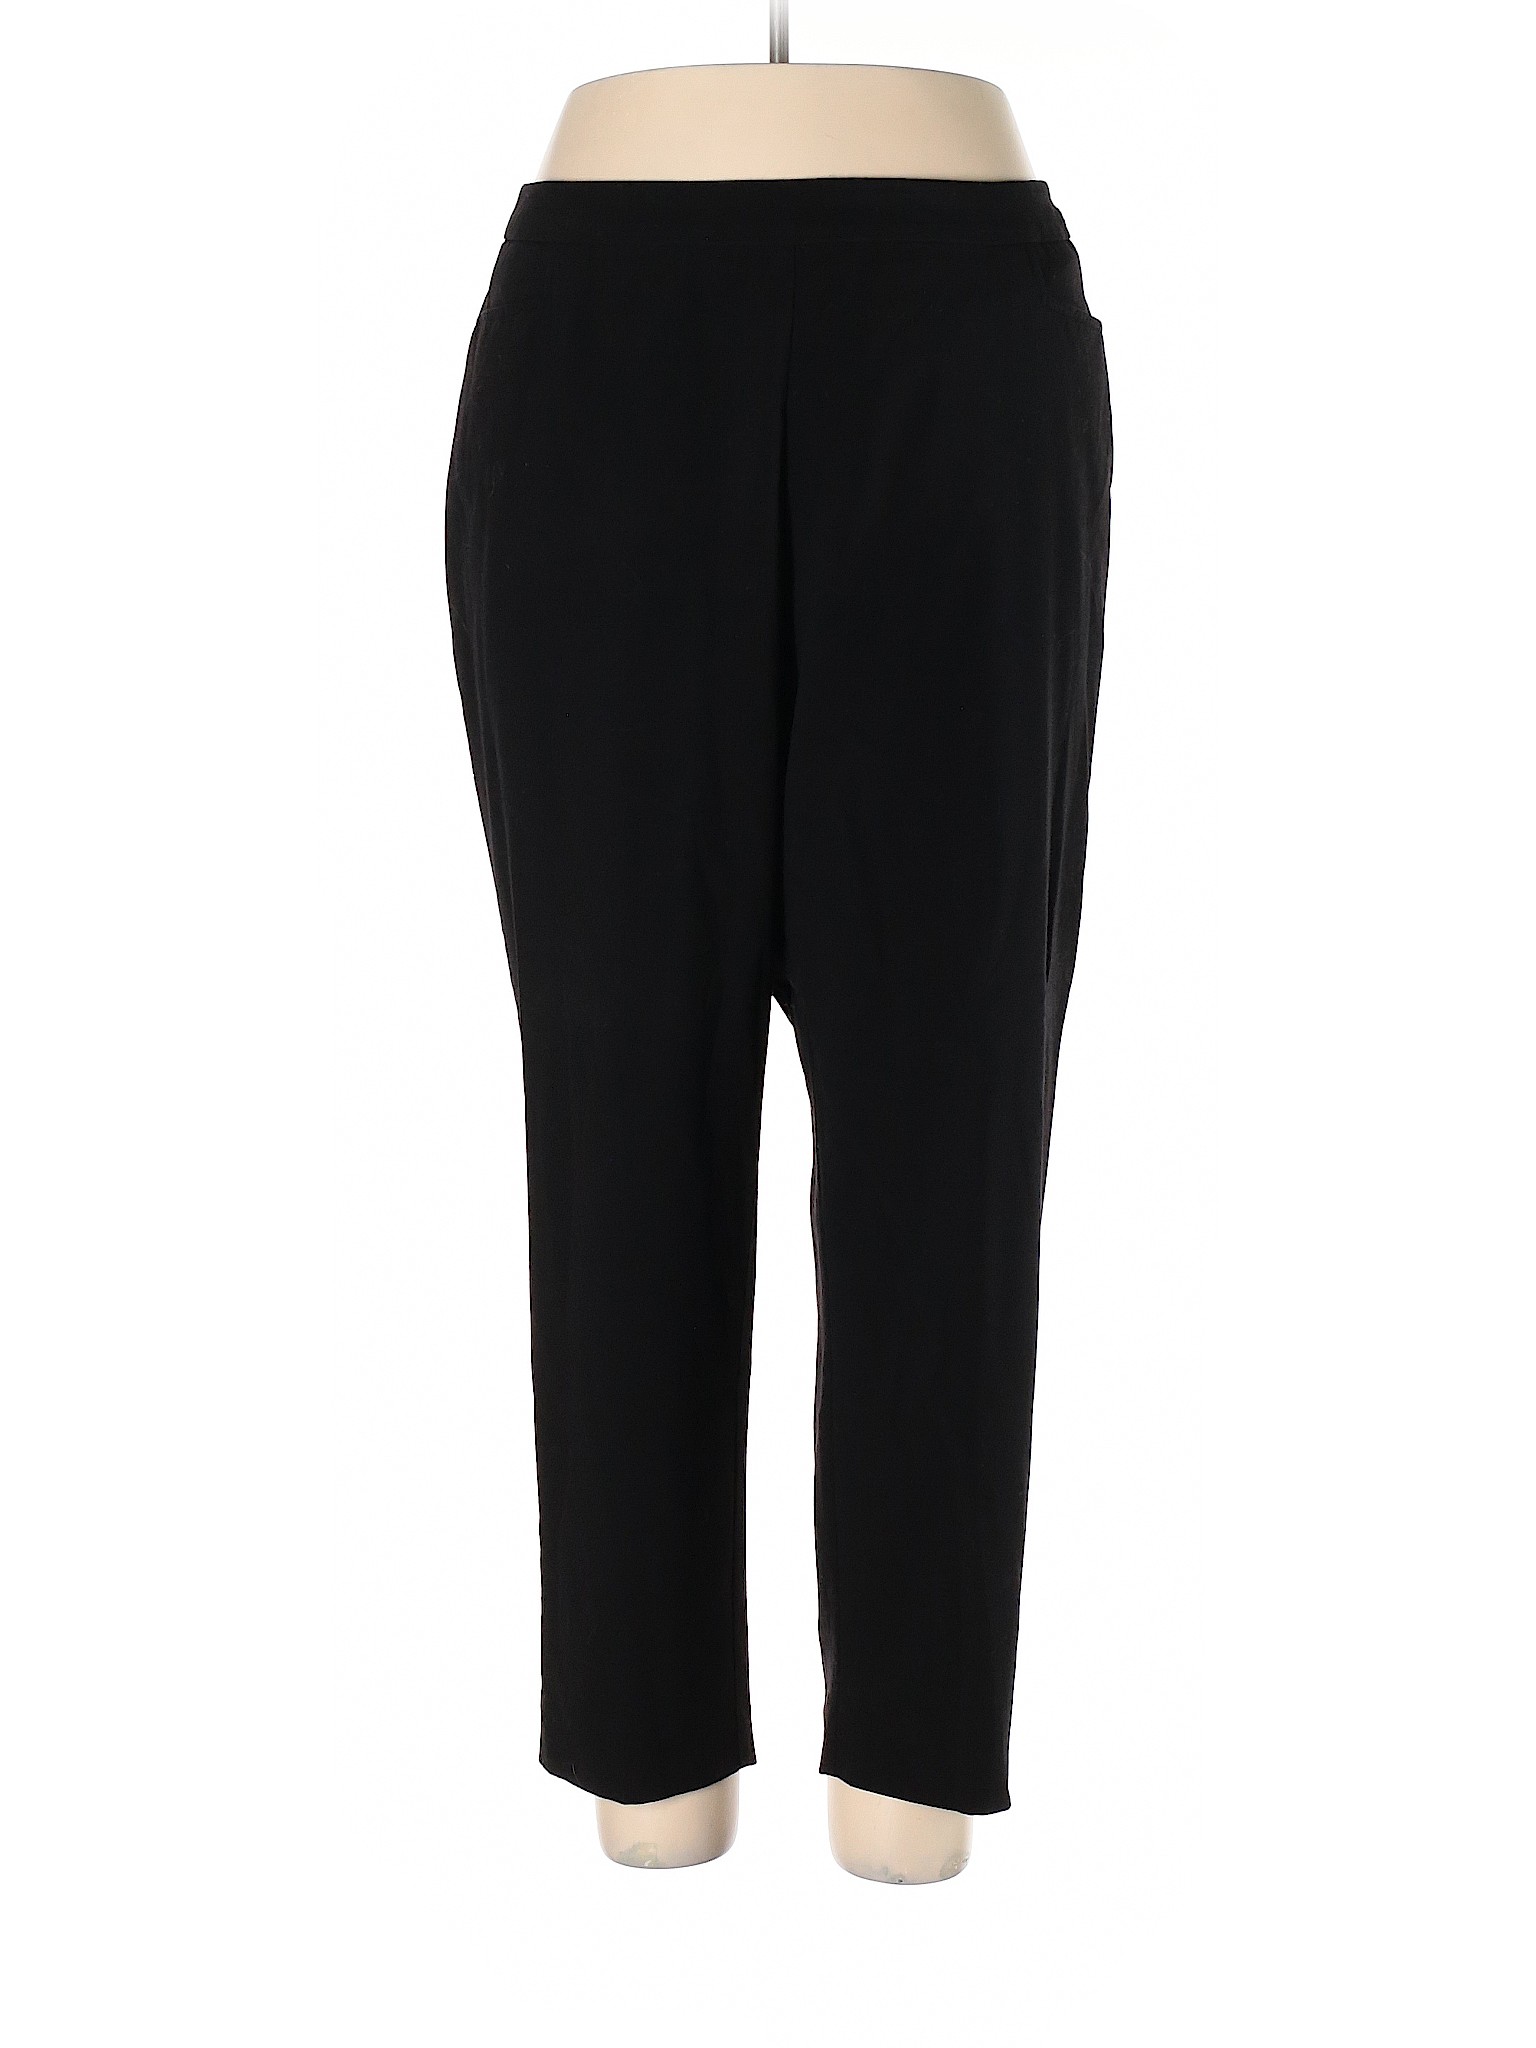 Roz & Ali Women Black Dress Pants 16 | eBay